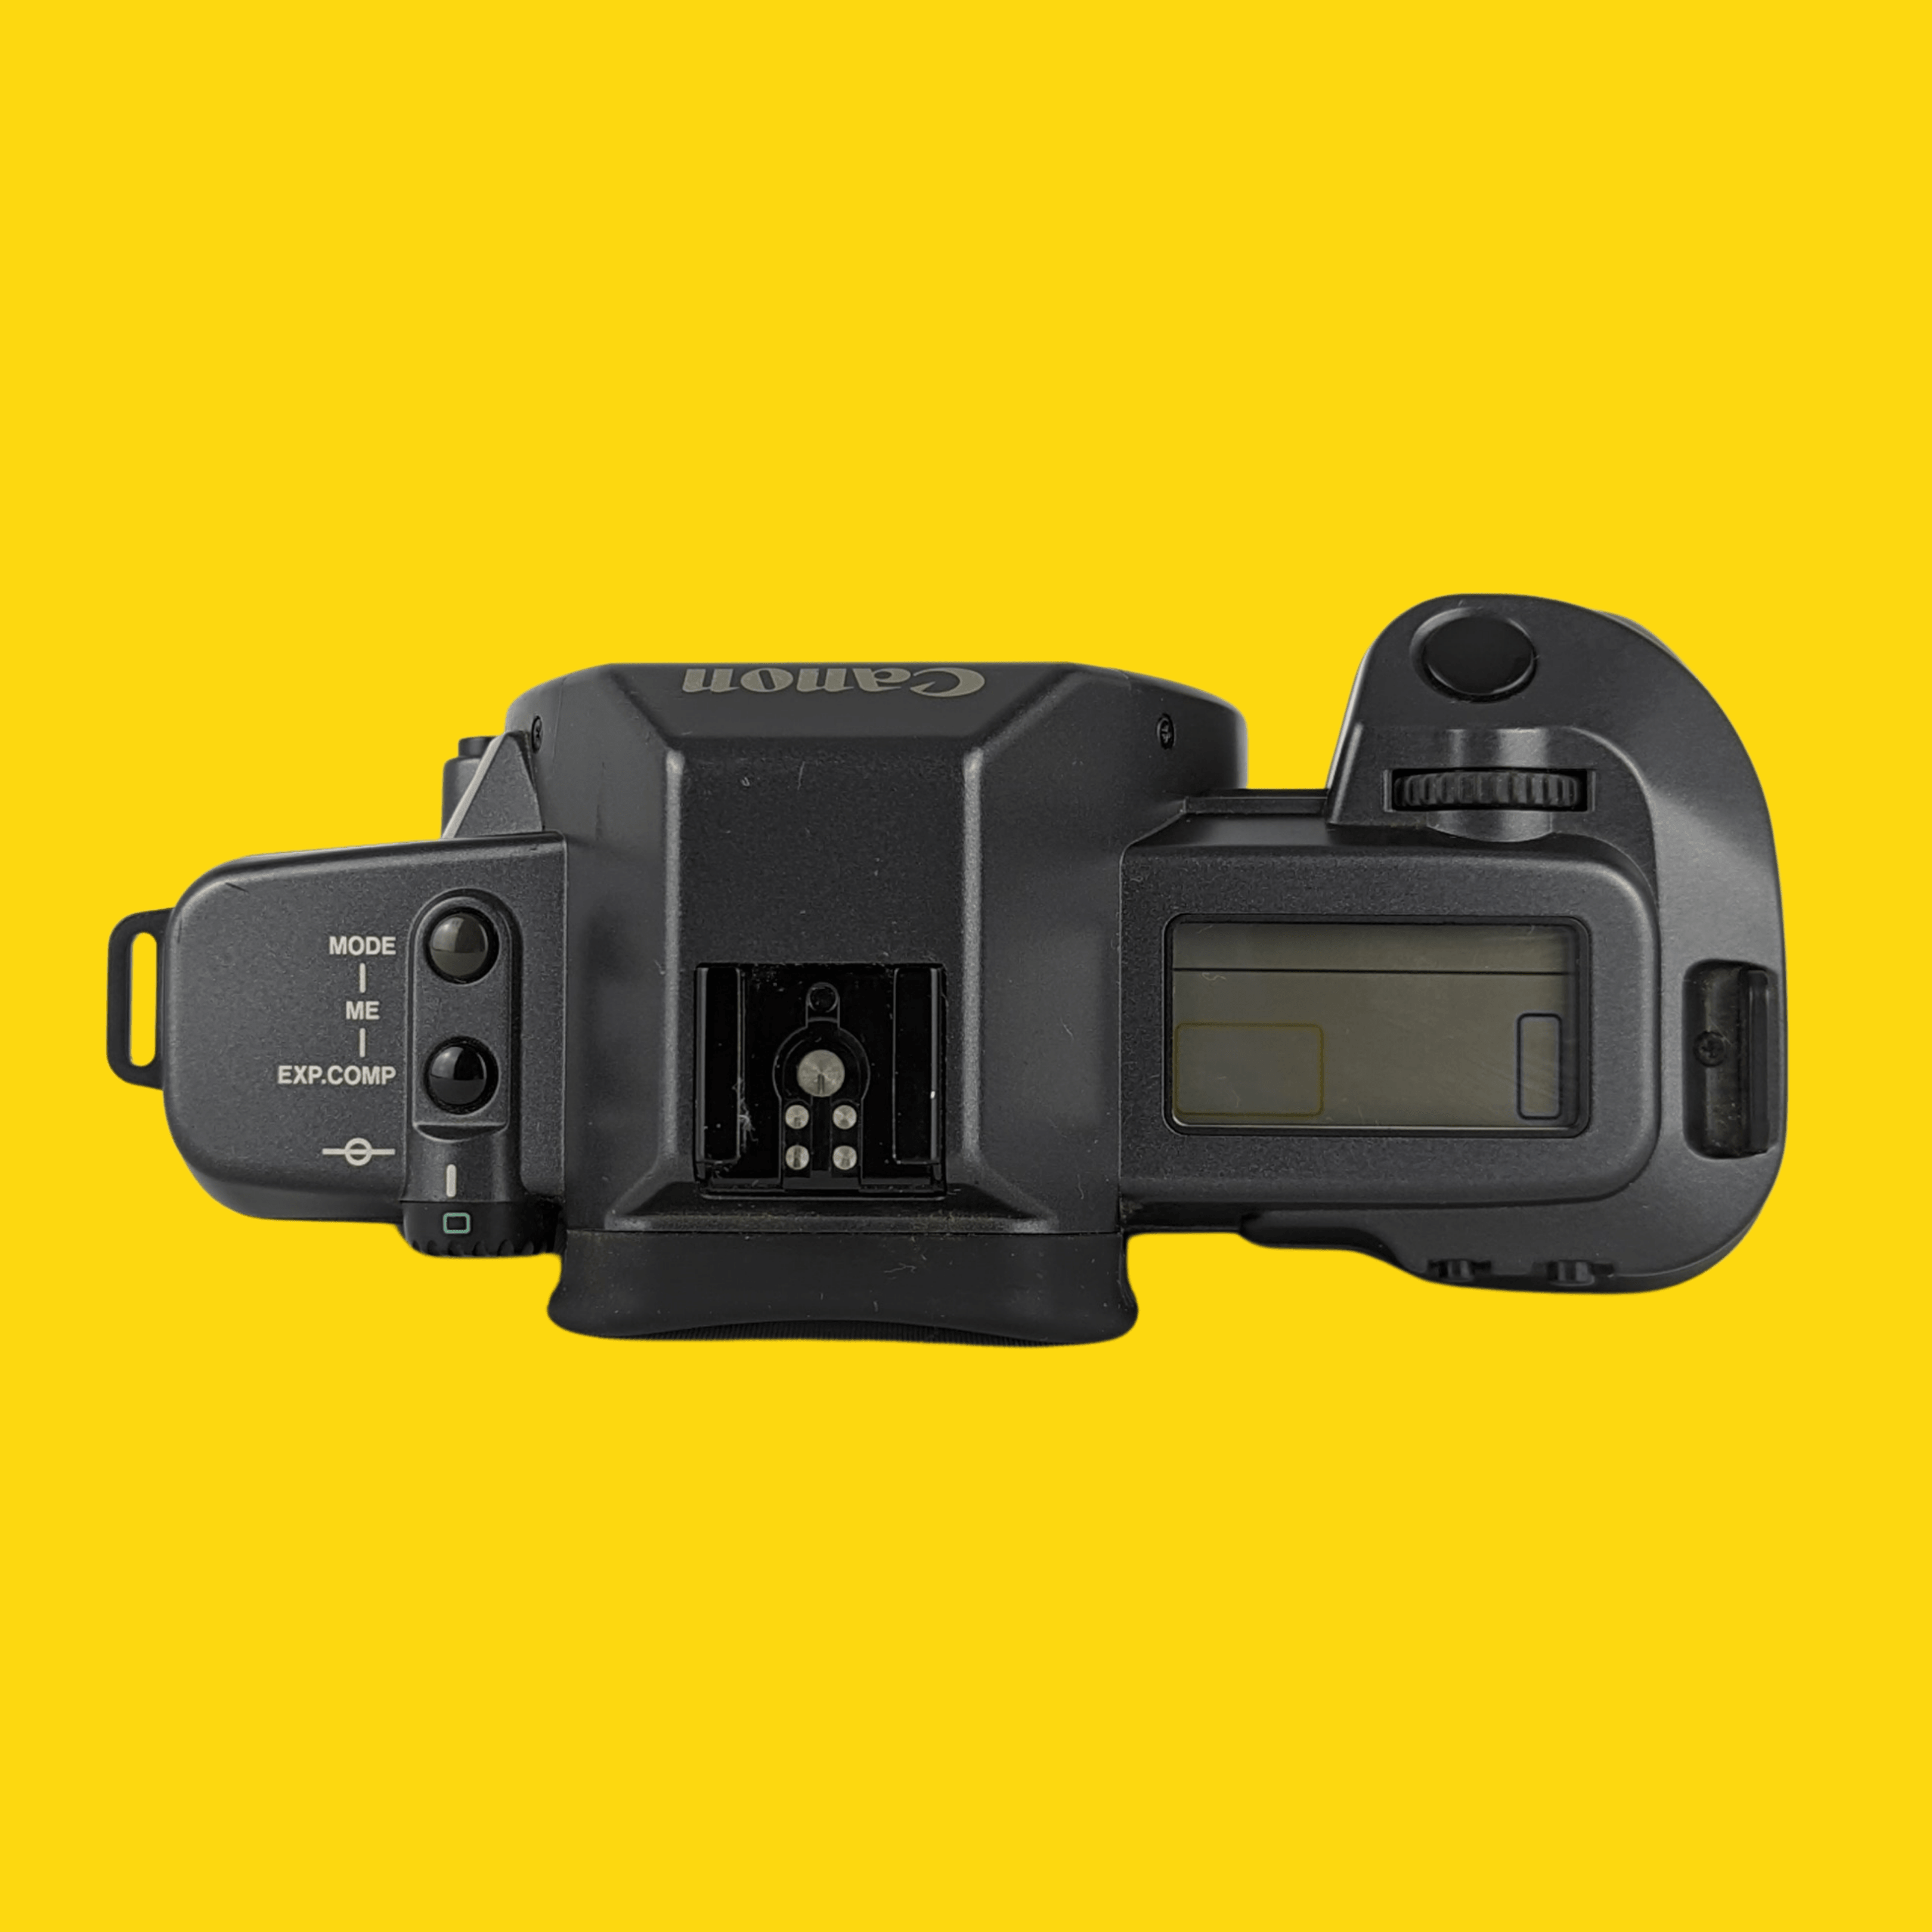 Canon EOS 630 フィルム一眼レフカメラ 簡単操作 フルセット - フィルムカメラ